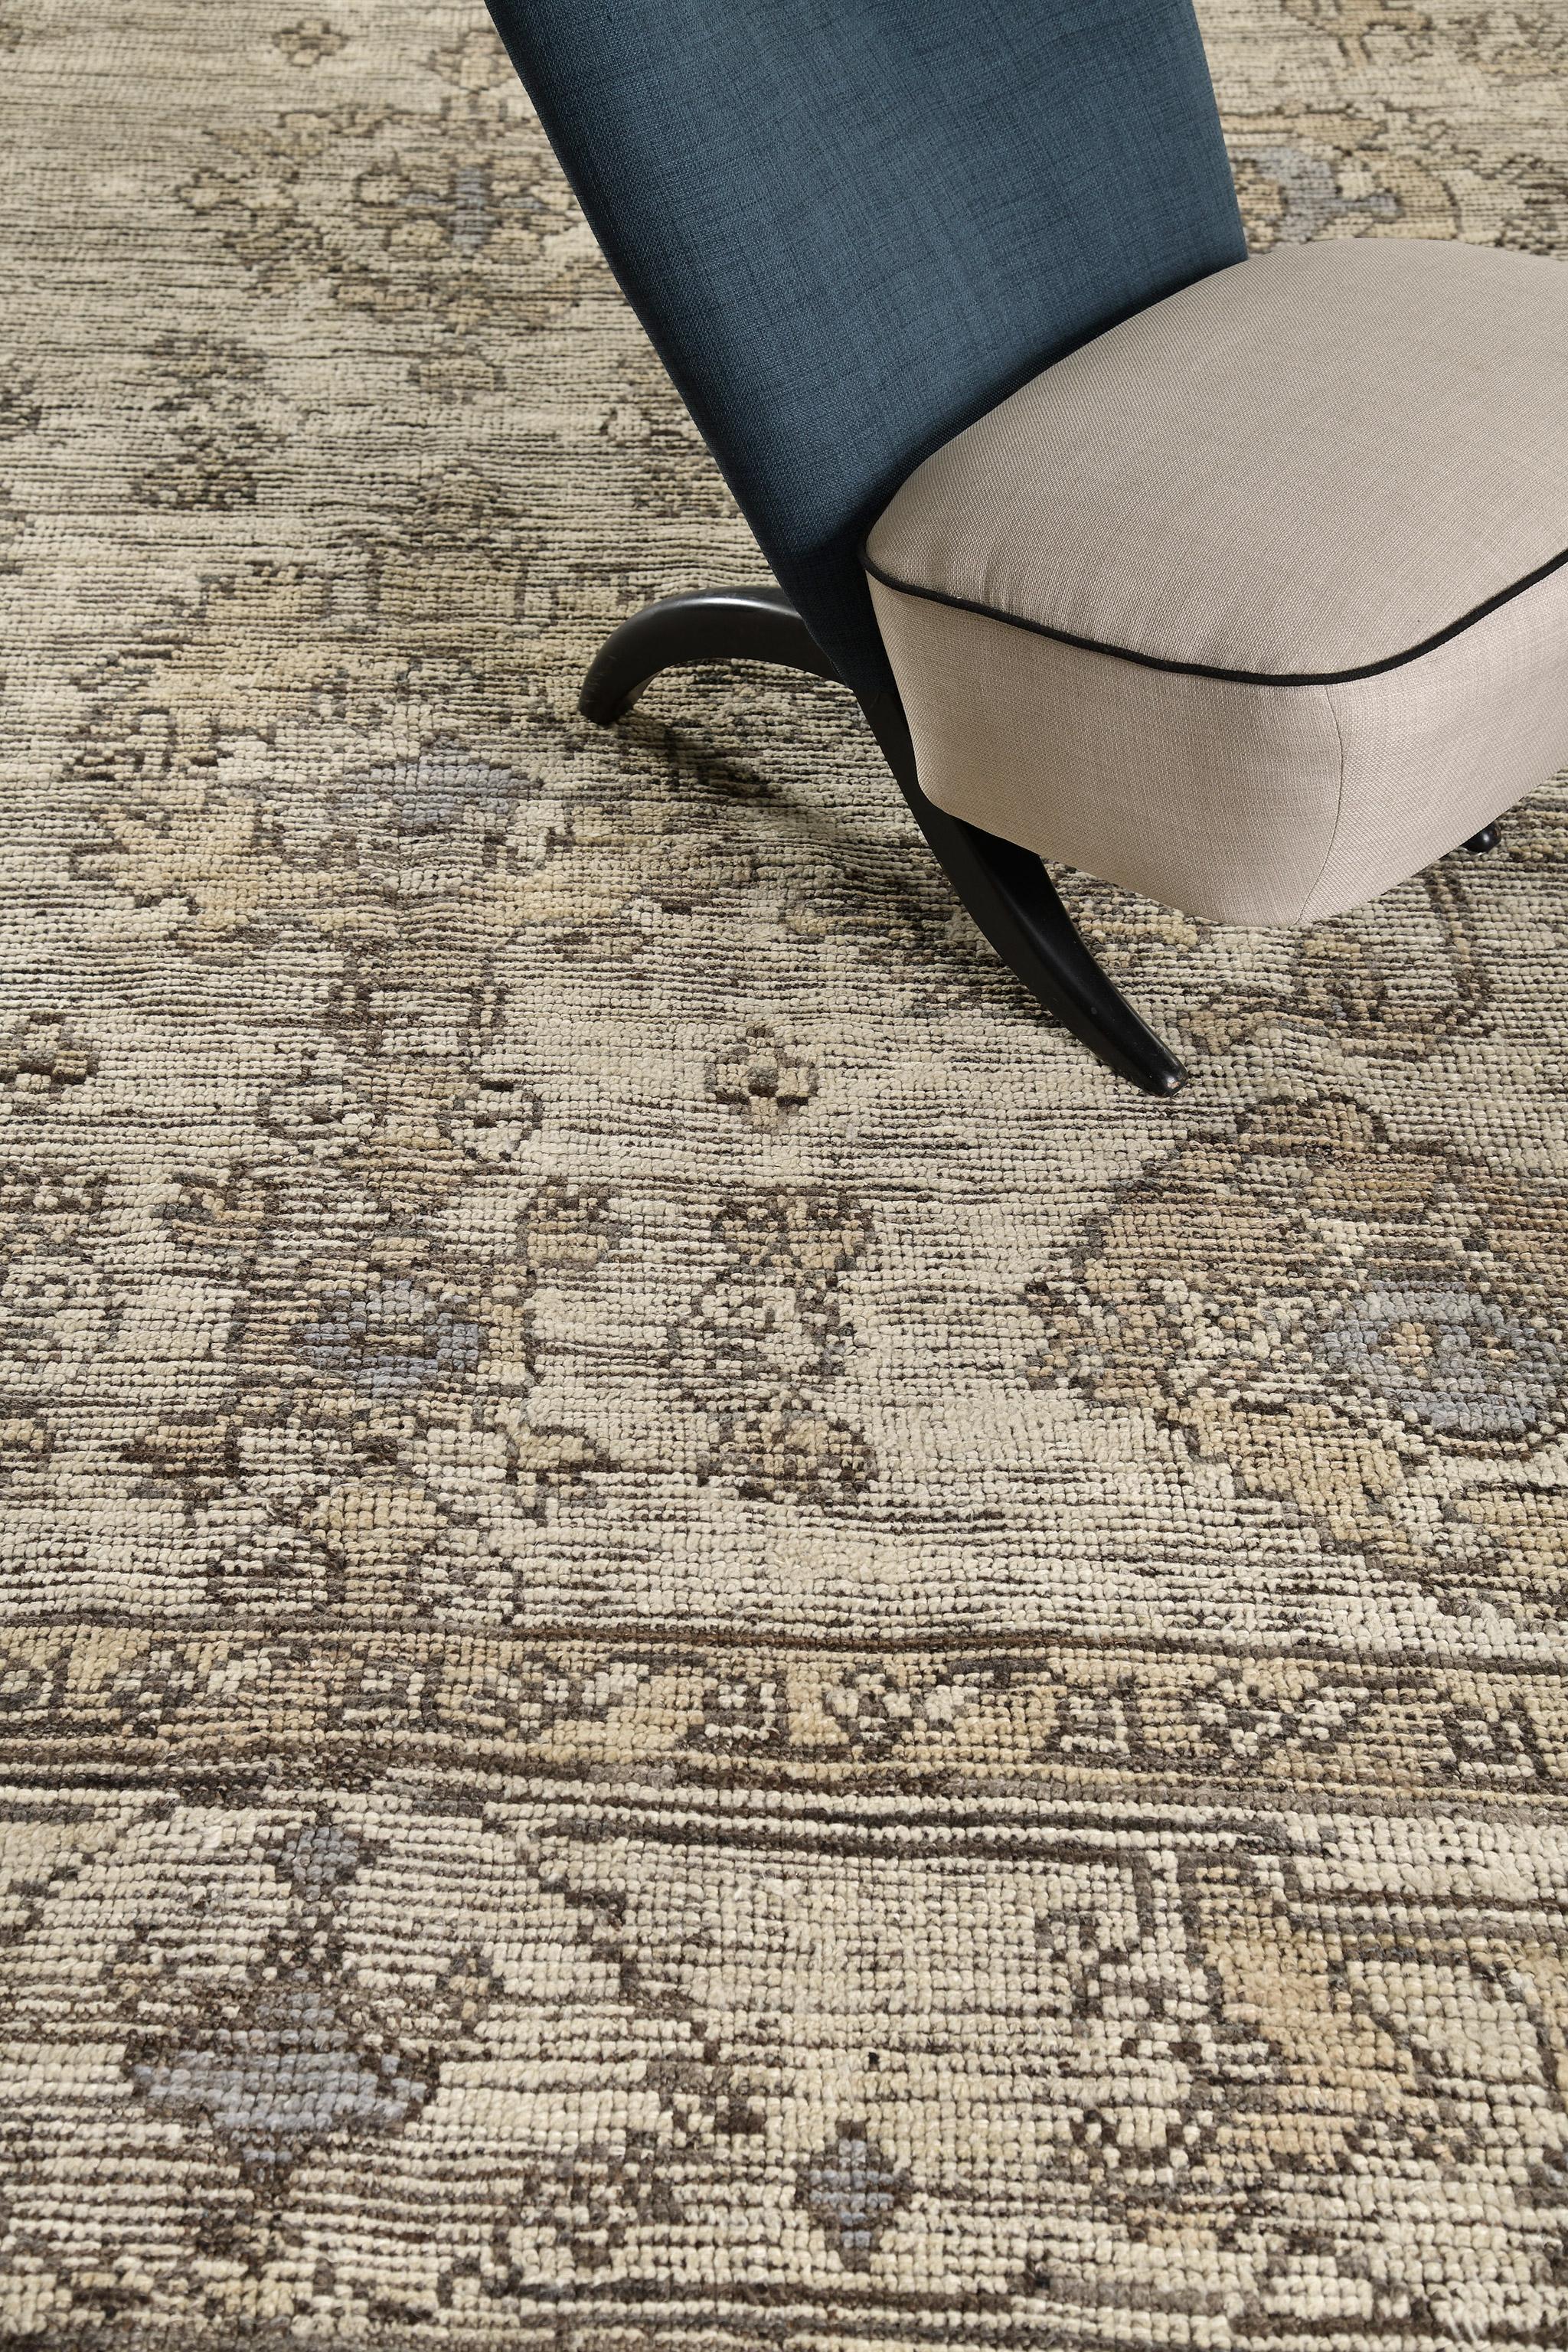 Ein fesselnder Oushak-Revival-Teppich, der eine wunderbare Übersetzung von zierlicher Raffinesse ist. Markante Palmetten und florale Muster zeigen eine bemerkenswerte Ausstrahlung in den atemberaubenden Schattierungen von Beige und Kamel, umrahmt